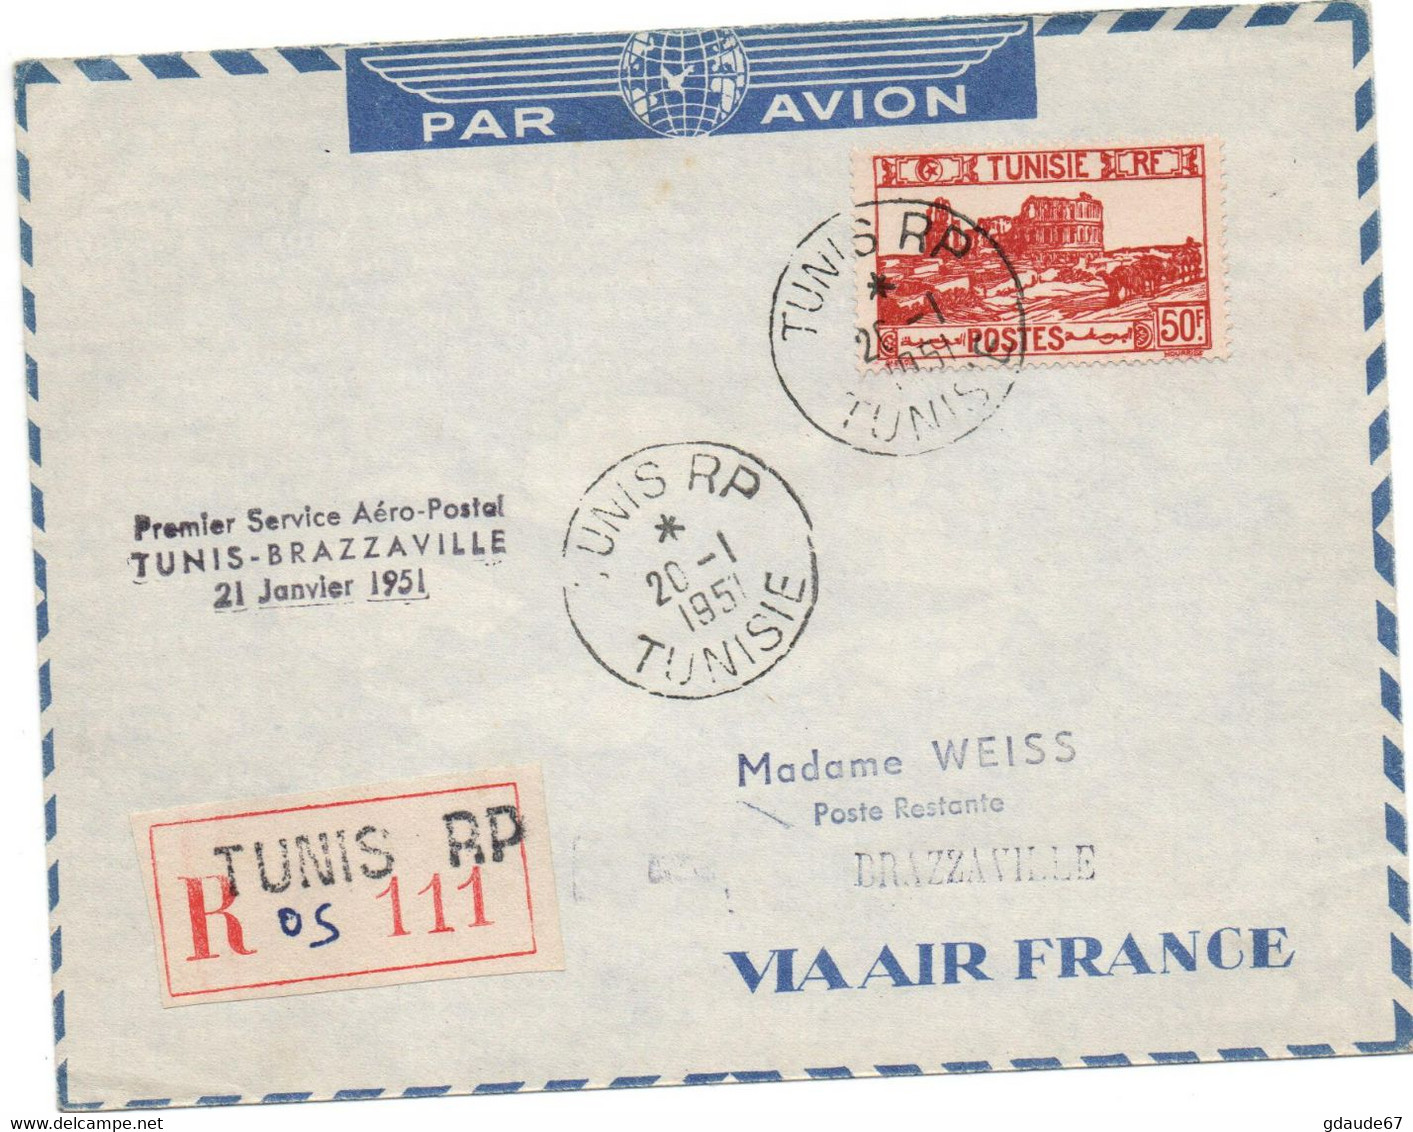 1951 - ENVELOPPE PAR AVION De TUNIS (TUNISIE) Avec PREMIER SERVICE AERO POSTAL TUNIS BRAZZAVILLE 21 JANVIER 1951 - Covers & Documents